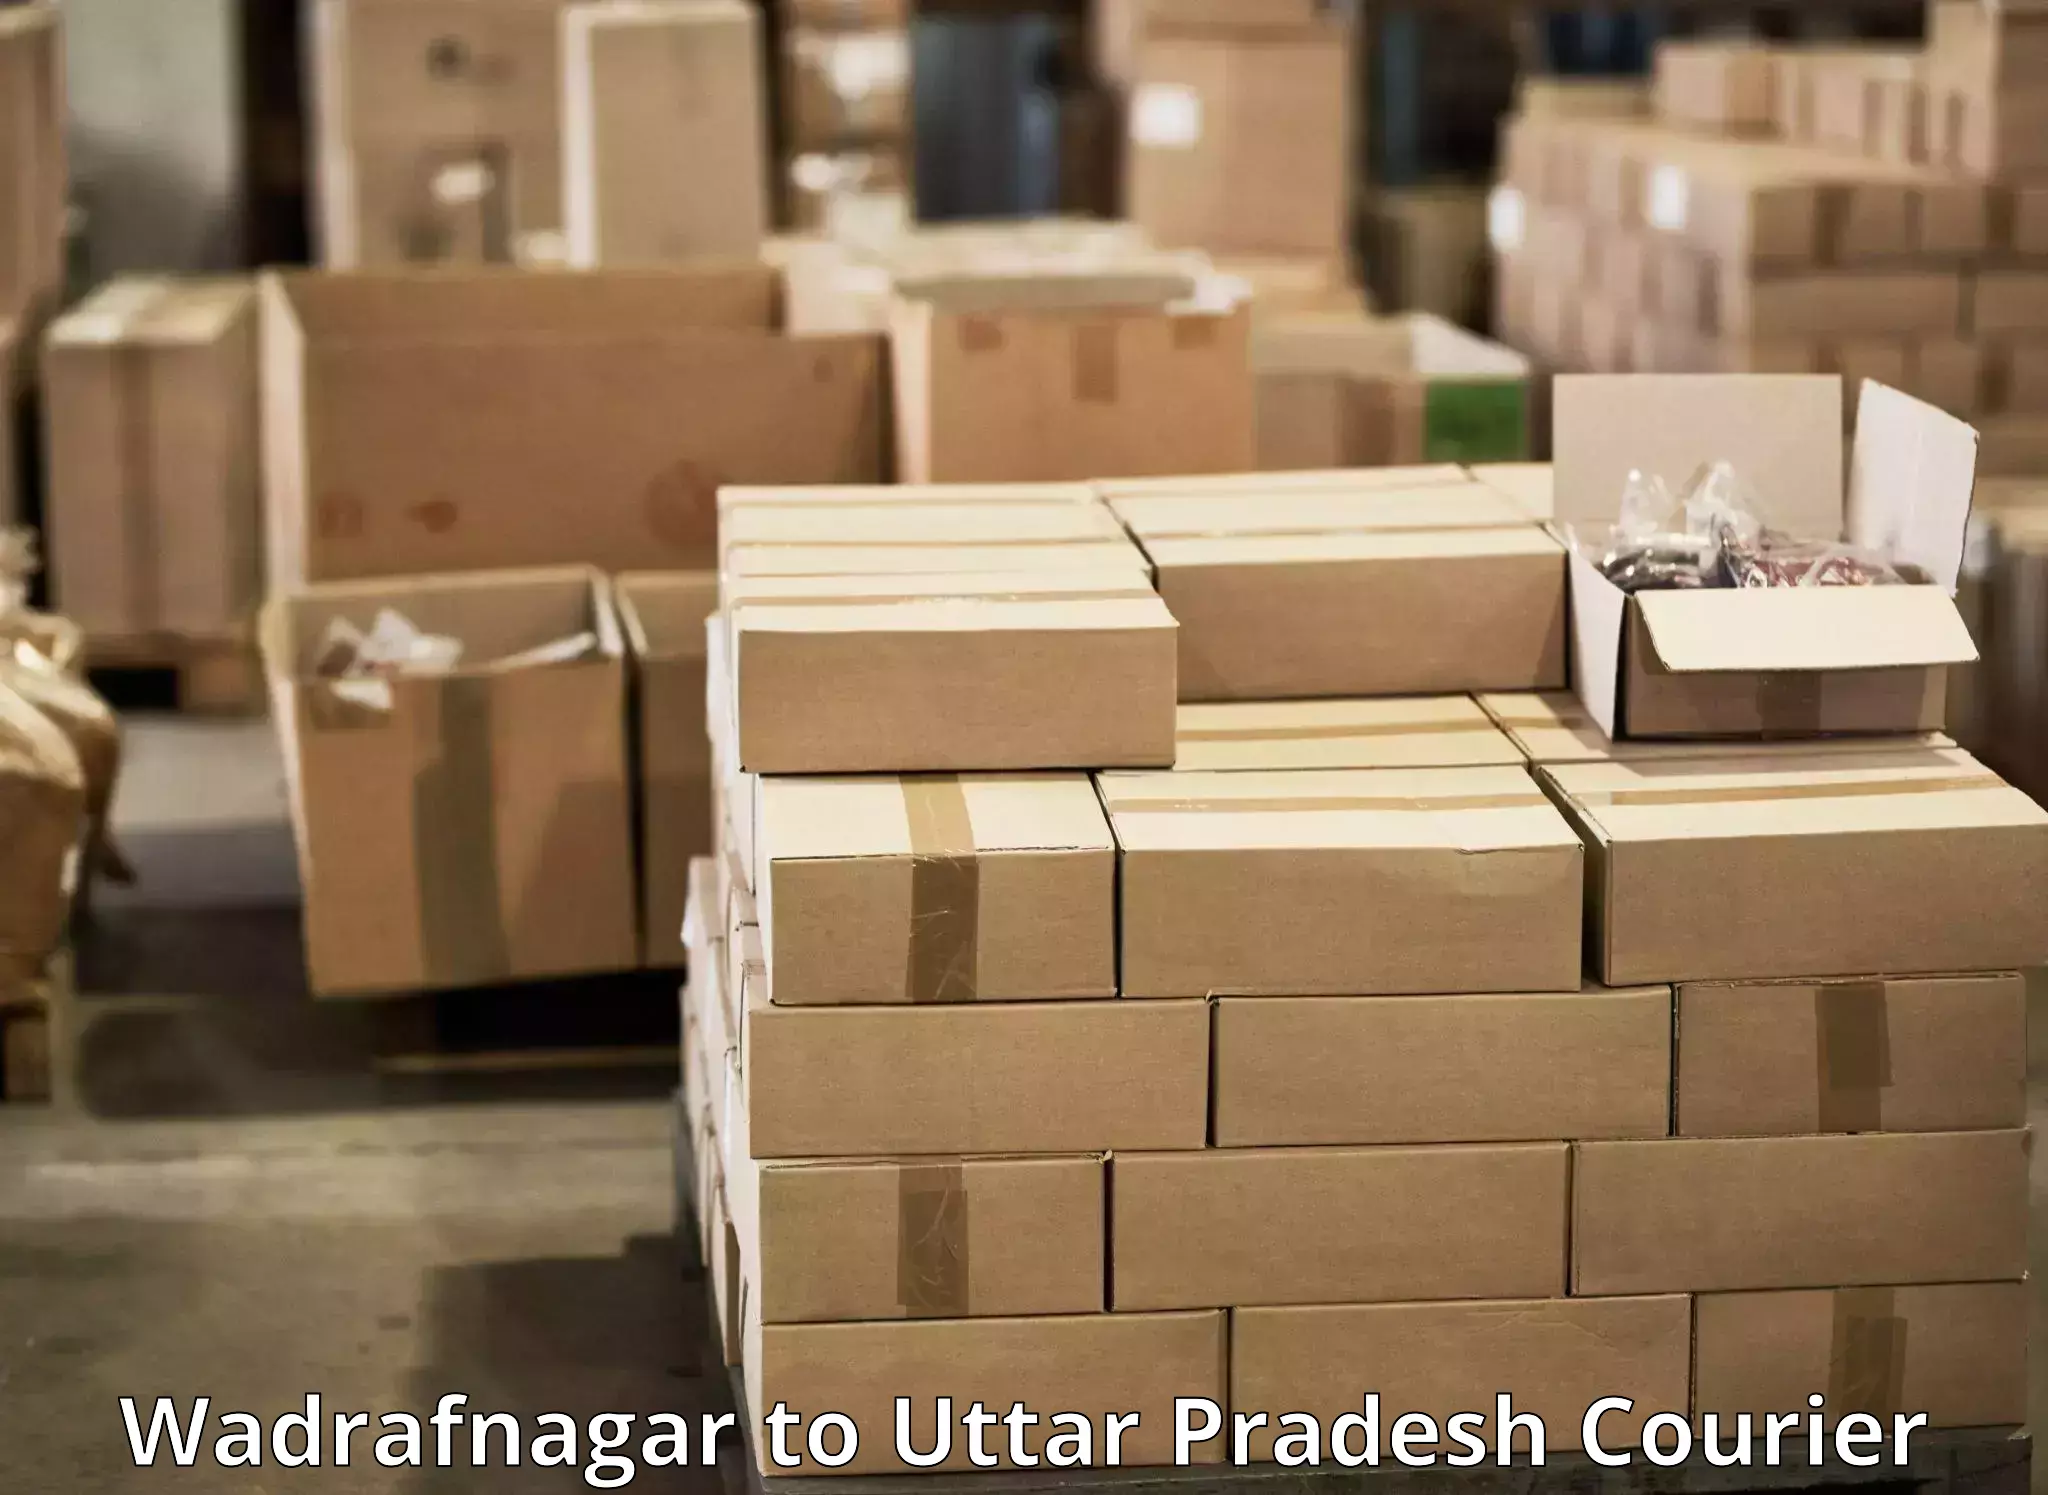 Premium courier services Wadrafnagar to Tundla